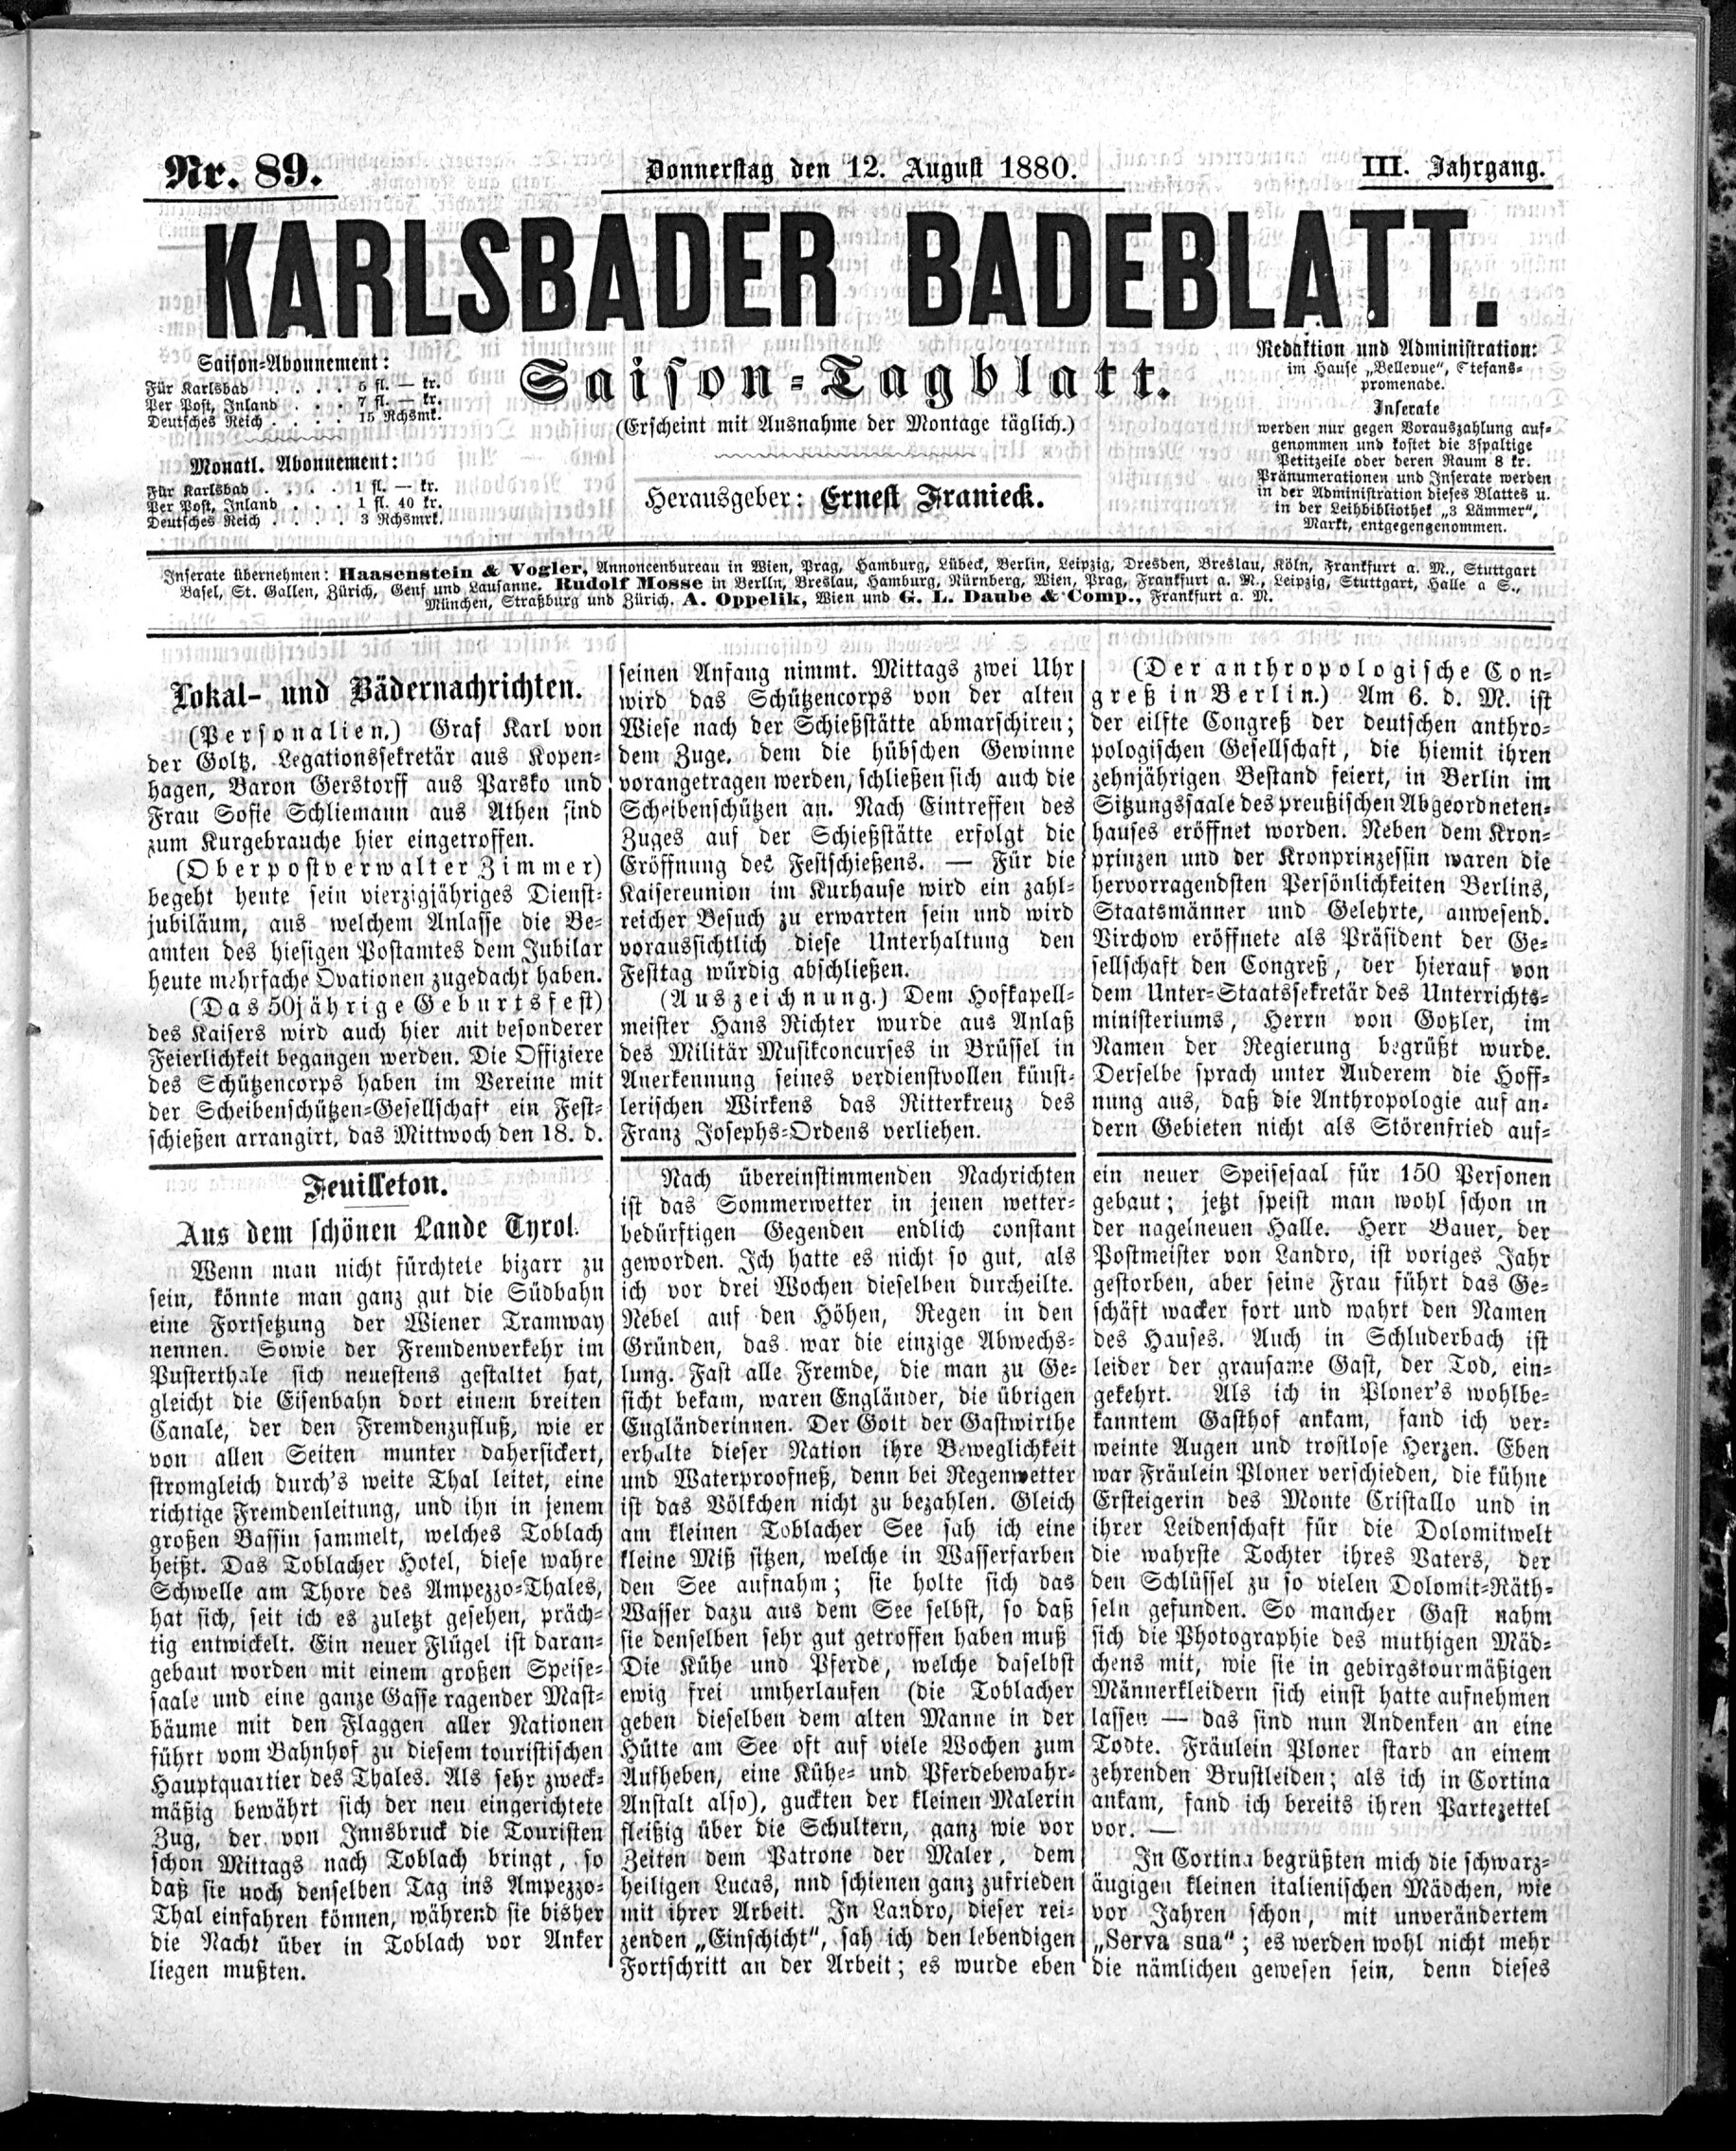 1. karlsbader-badeblatt-1880-08-12-n89_1805